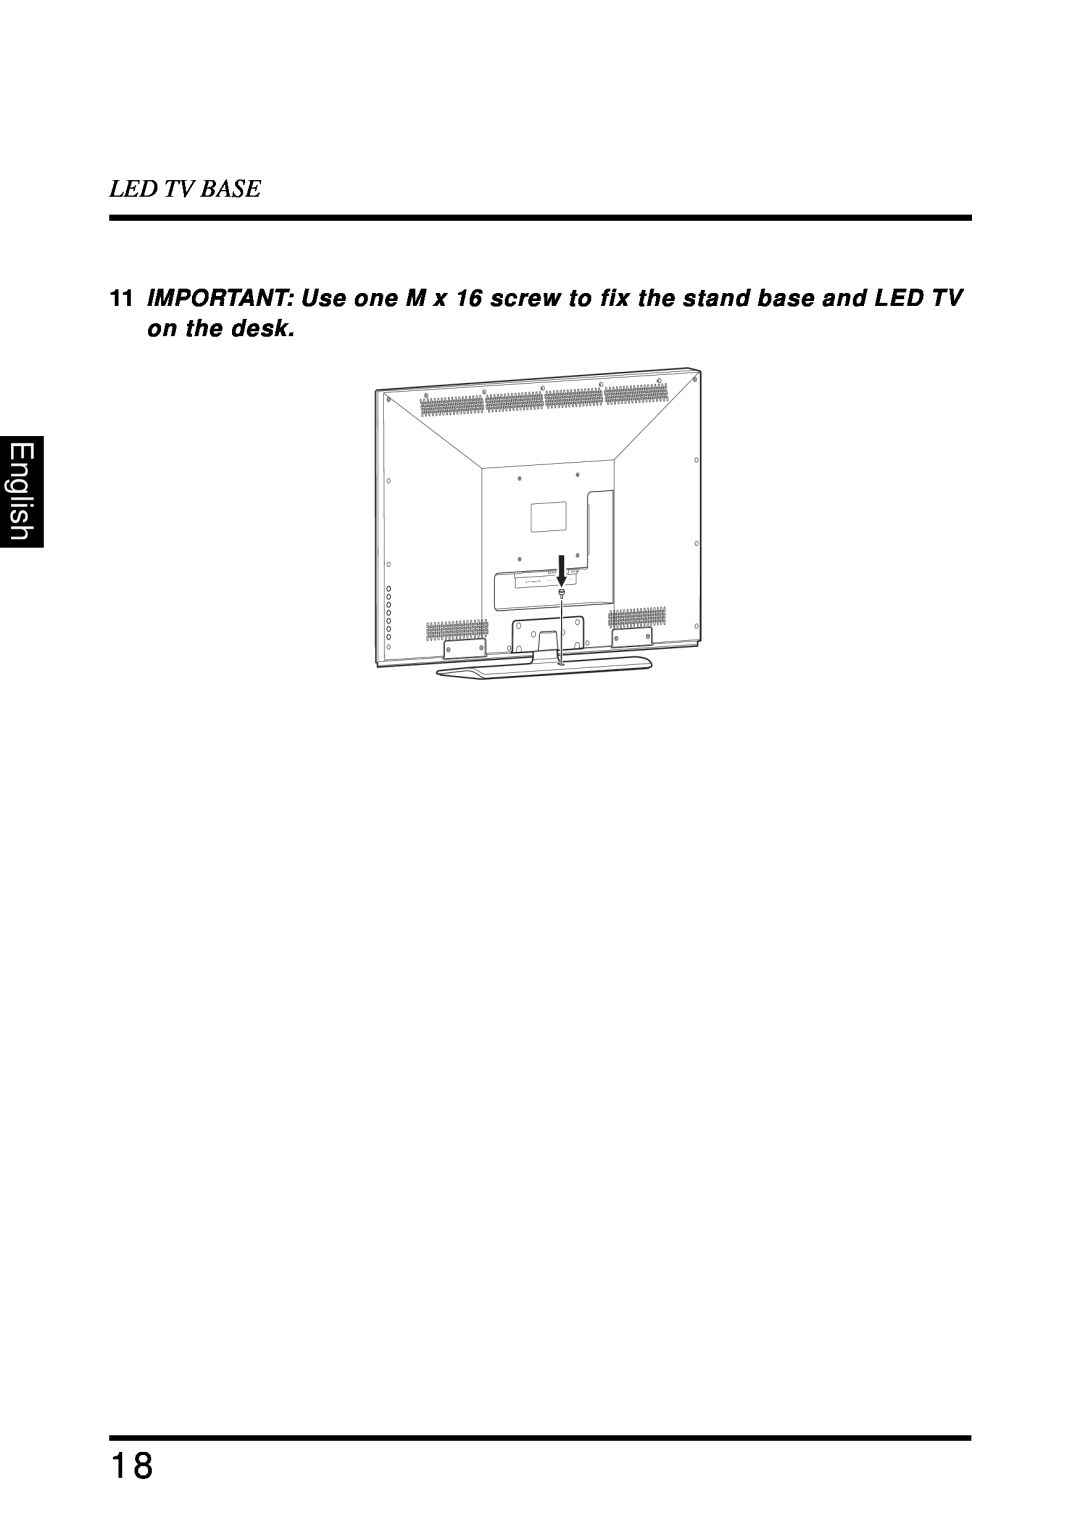 Westinghouse LD-4680 user manual English, Led Tv Base 